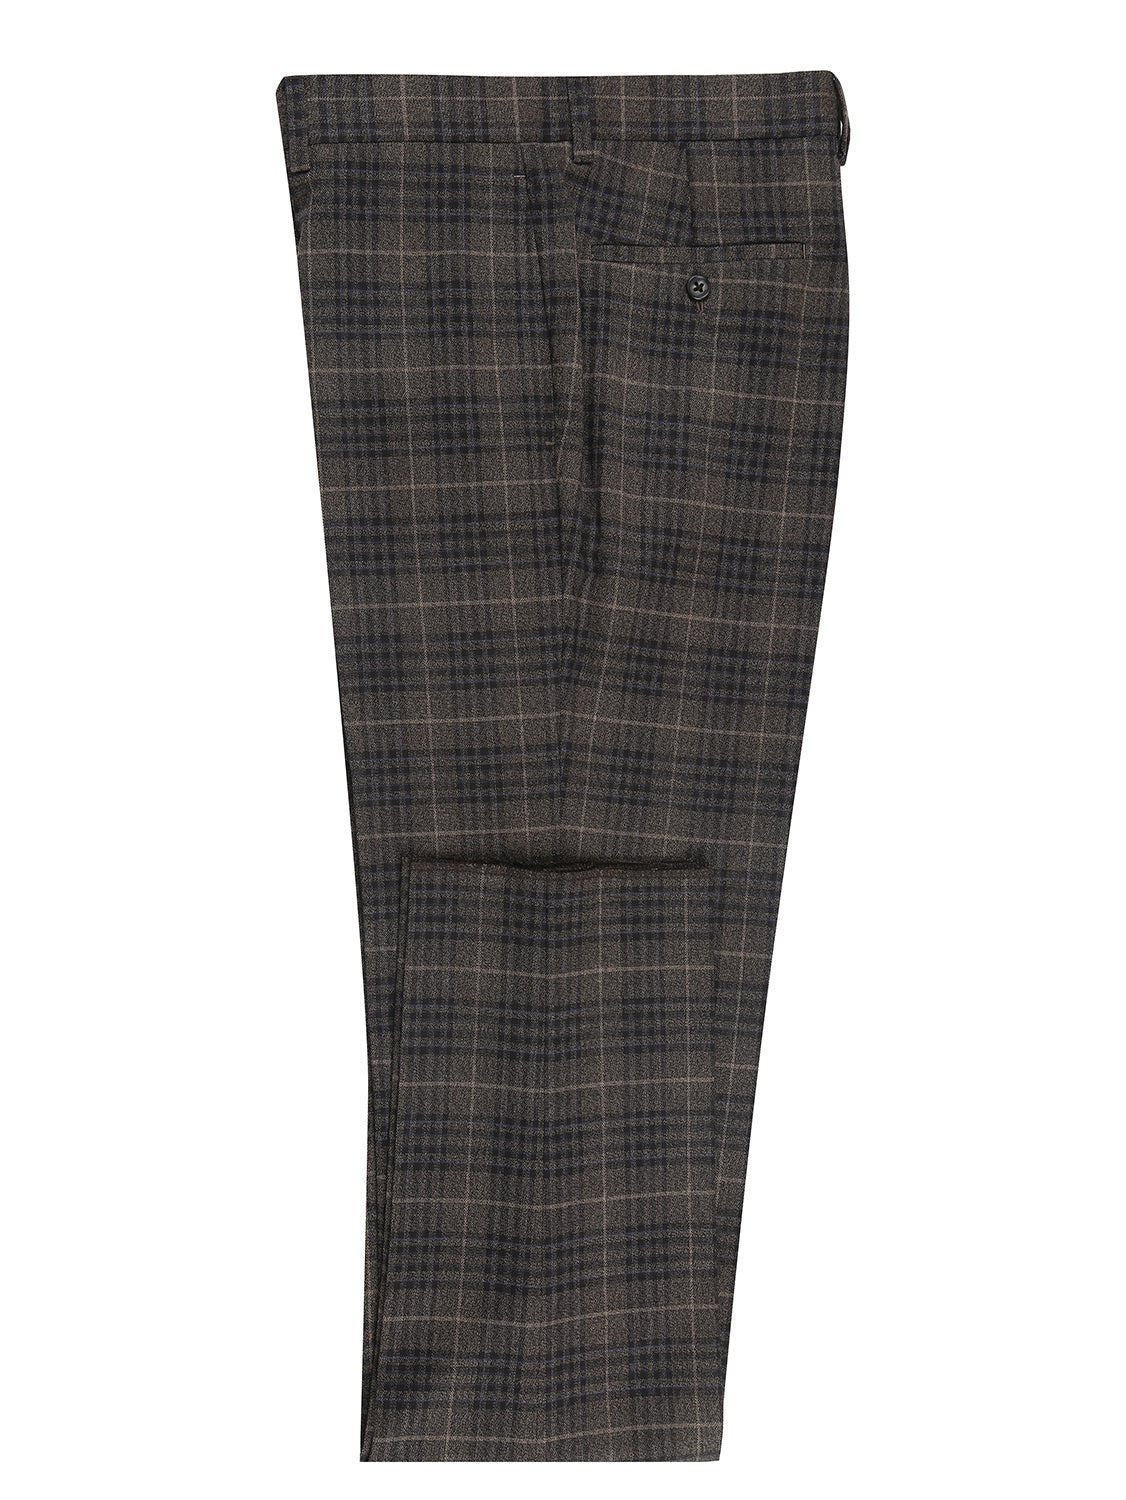 English Laundry Men's 3-Piece Slim Fit Check Peak Lapel Suit